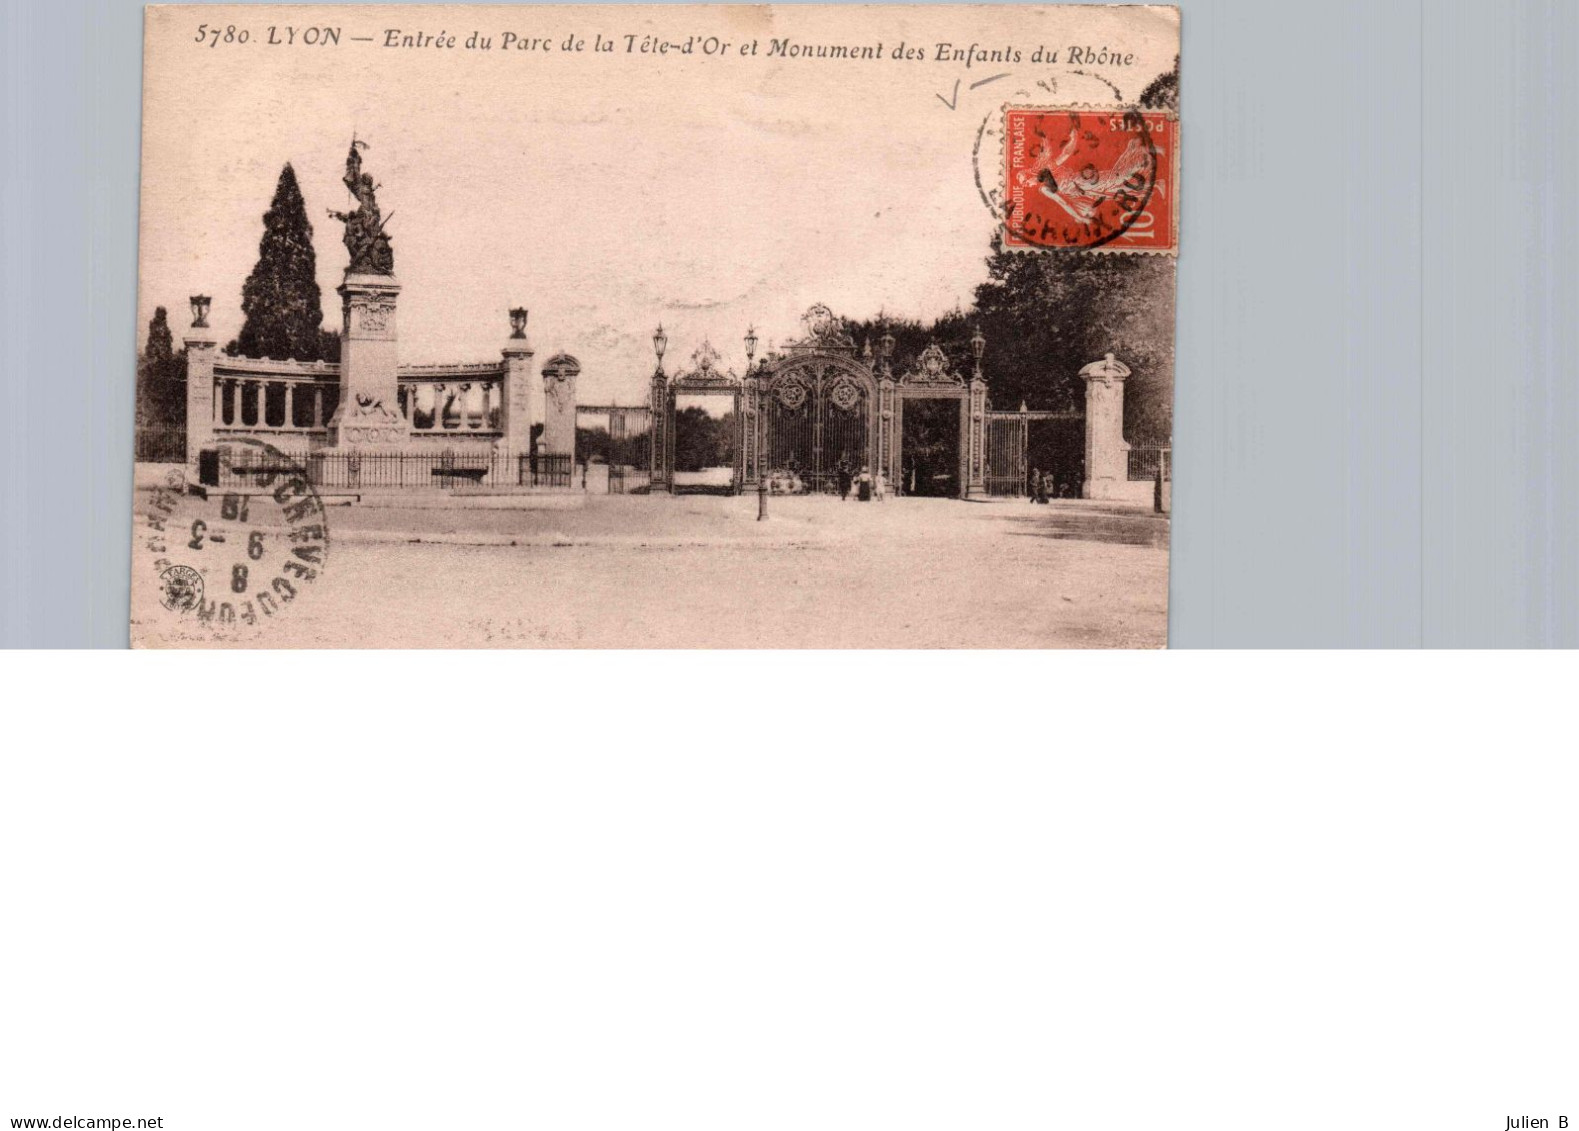 Lyon, Parc De La Tête D'Or, Monument Des Enfants Du Rhone Et Entrée Du Parc, 9 Mars 1919 - Lyon 6